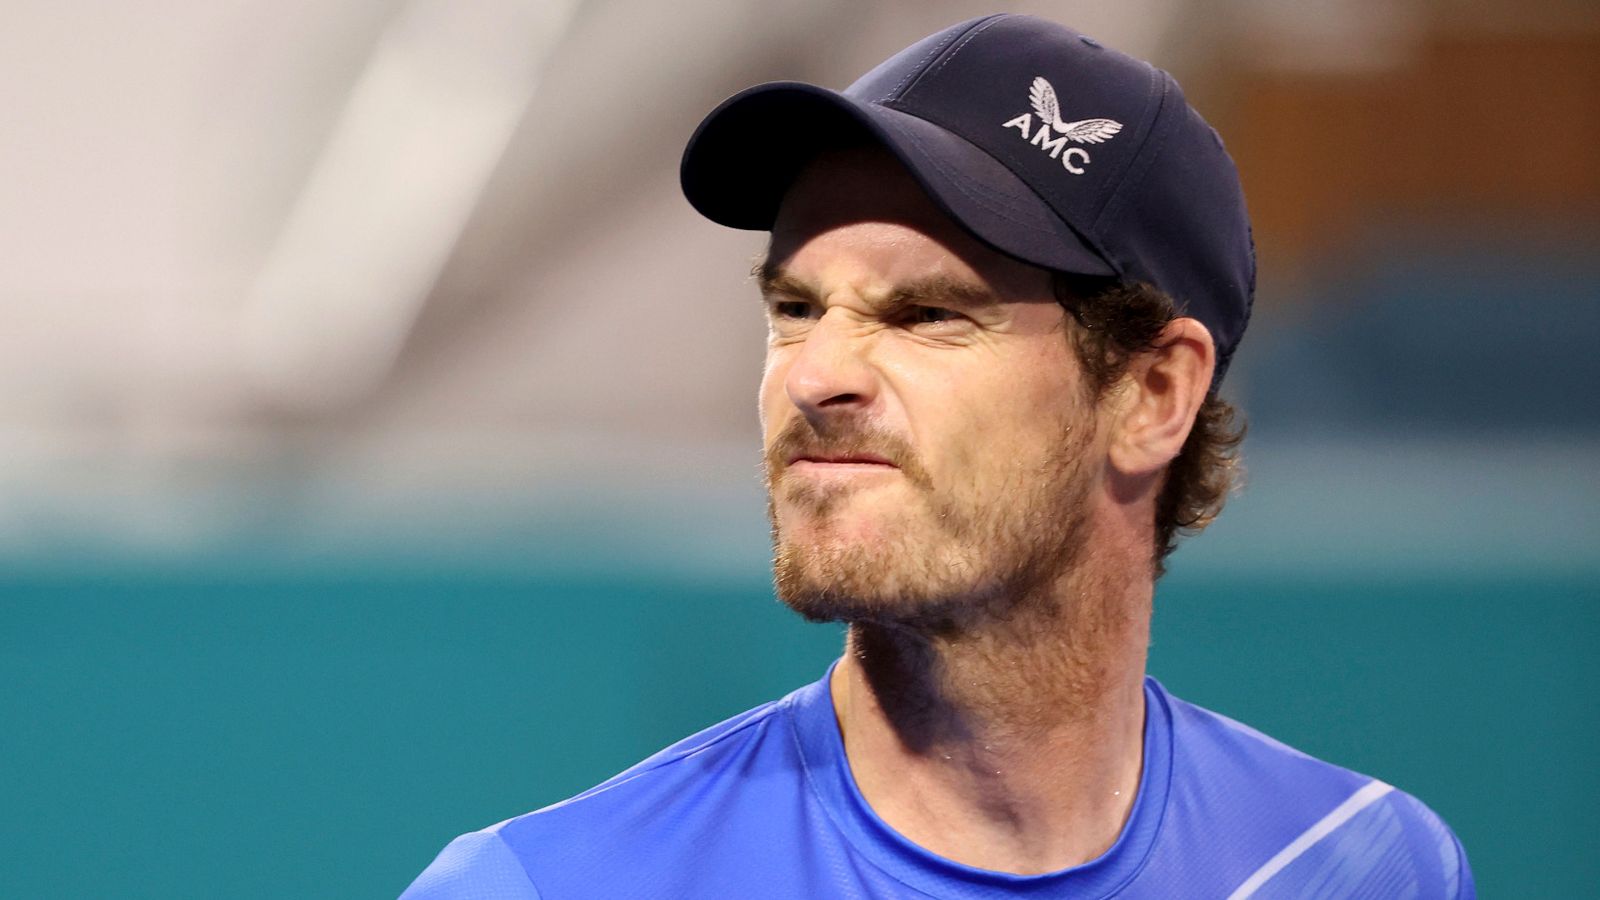 Madrid Open: Andy Murray wycofuje się z meczu z Novakiem Djokoviciem z powodu choroby |  Dan Evans, łuk Cam Norie |  wiadomości tenisowe